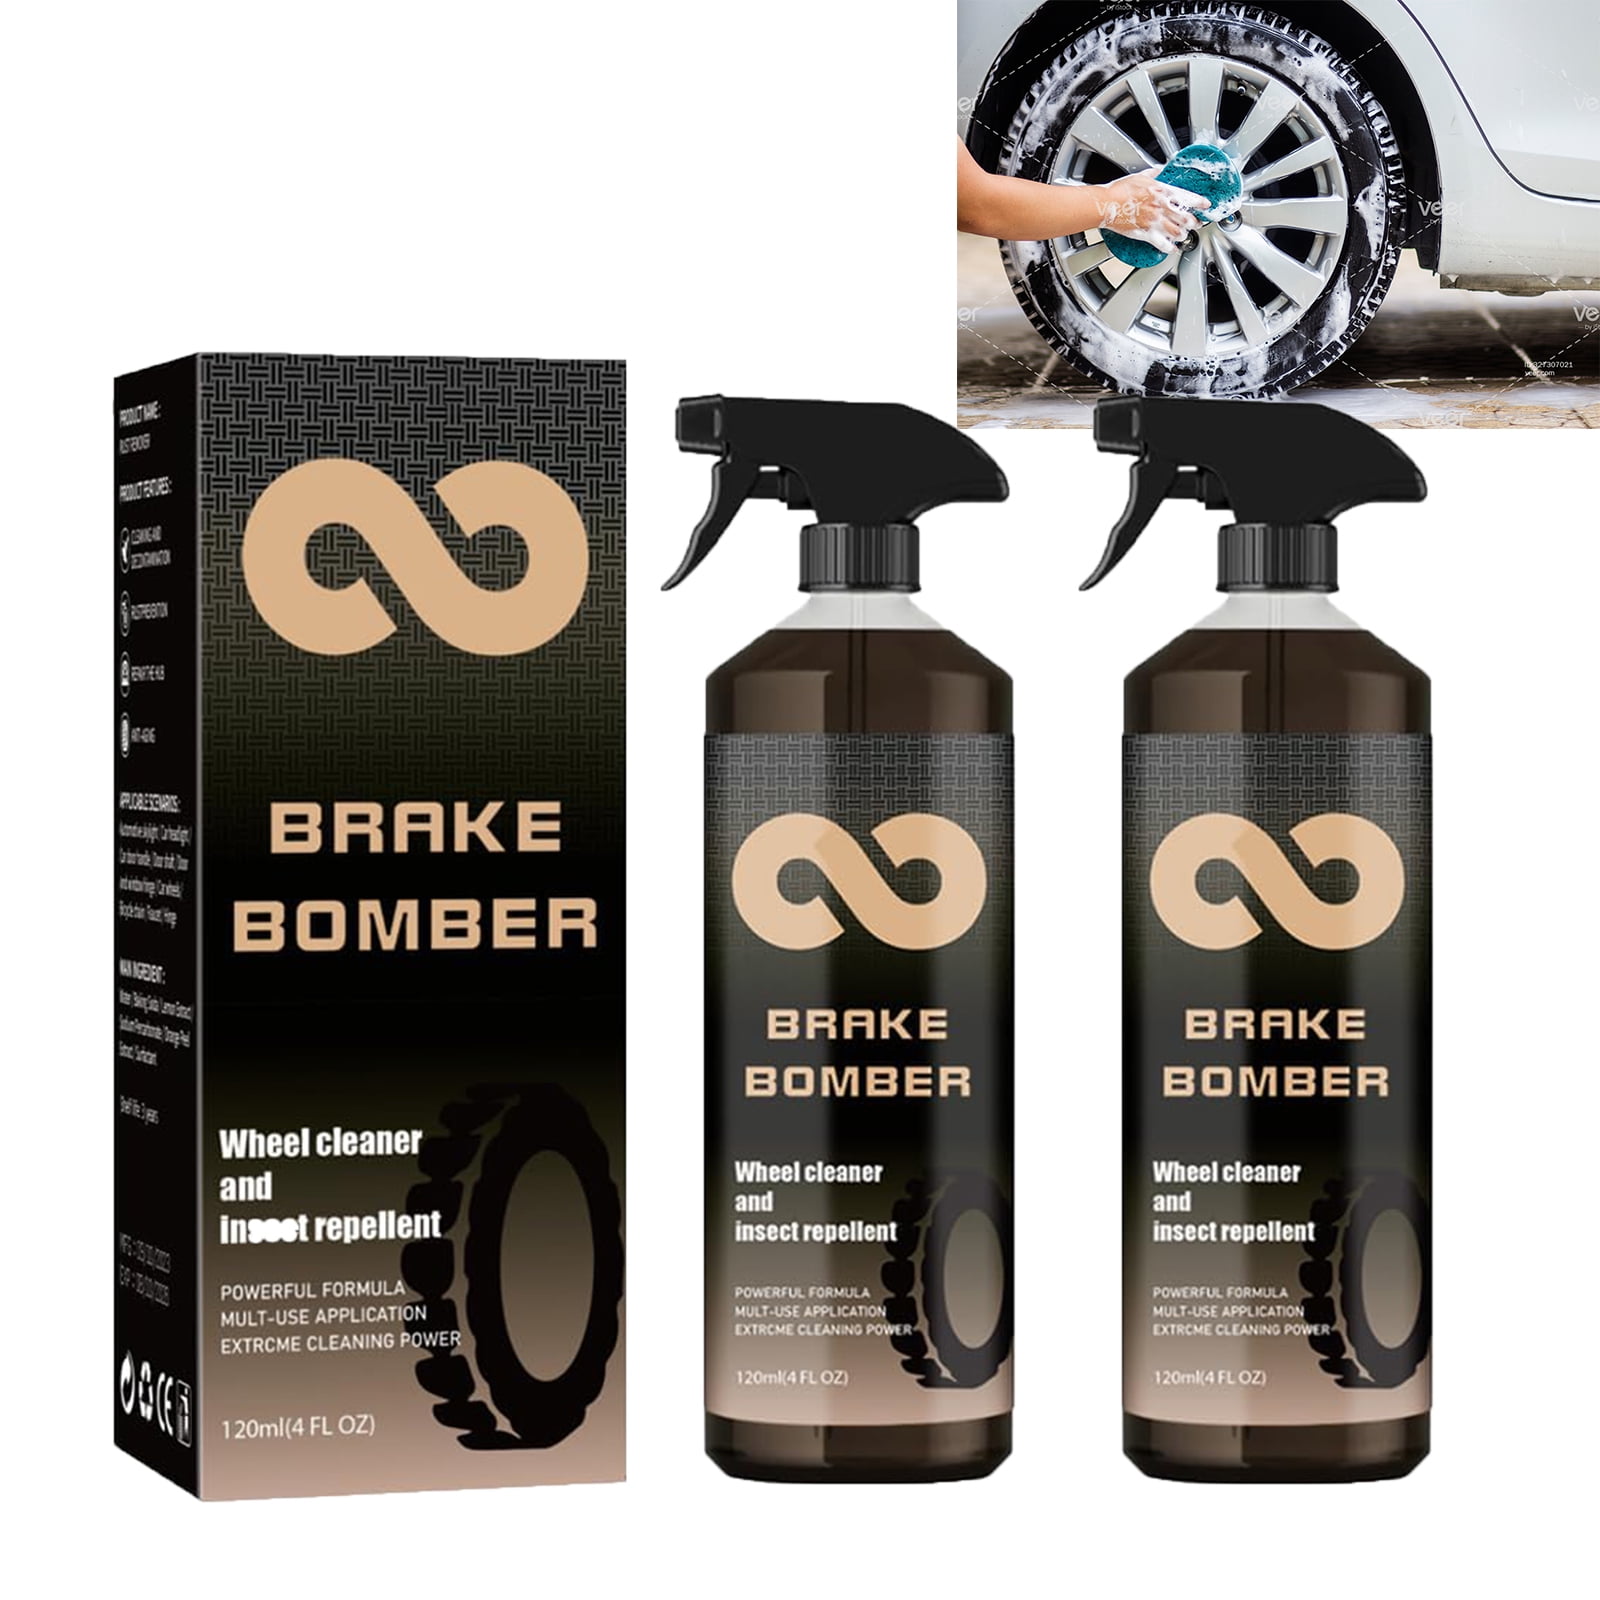  Dosoecse Brake Bomber Wheel Cleaner, Powerful Non-Acid